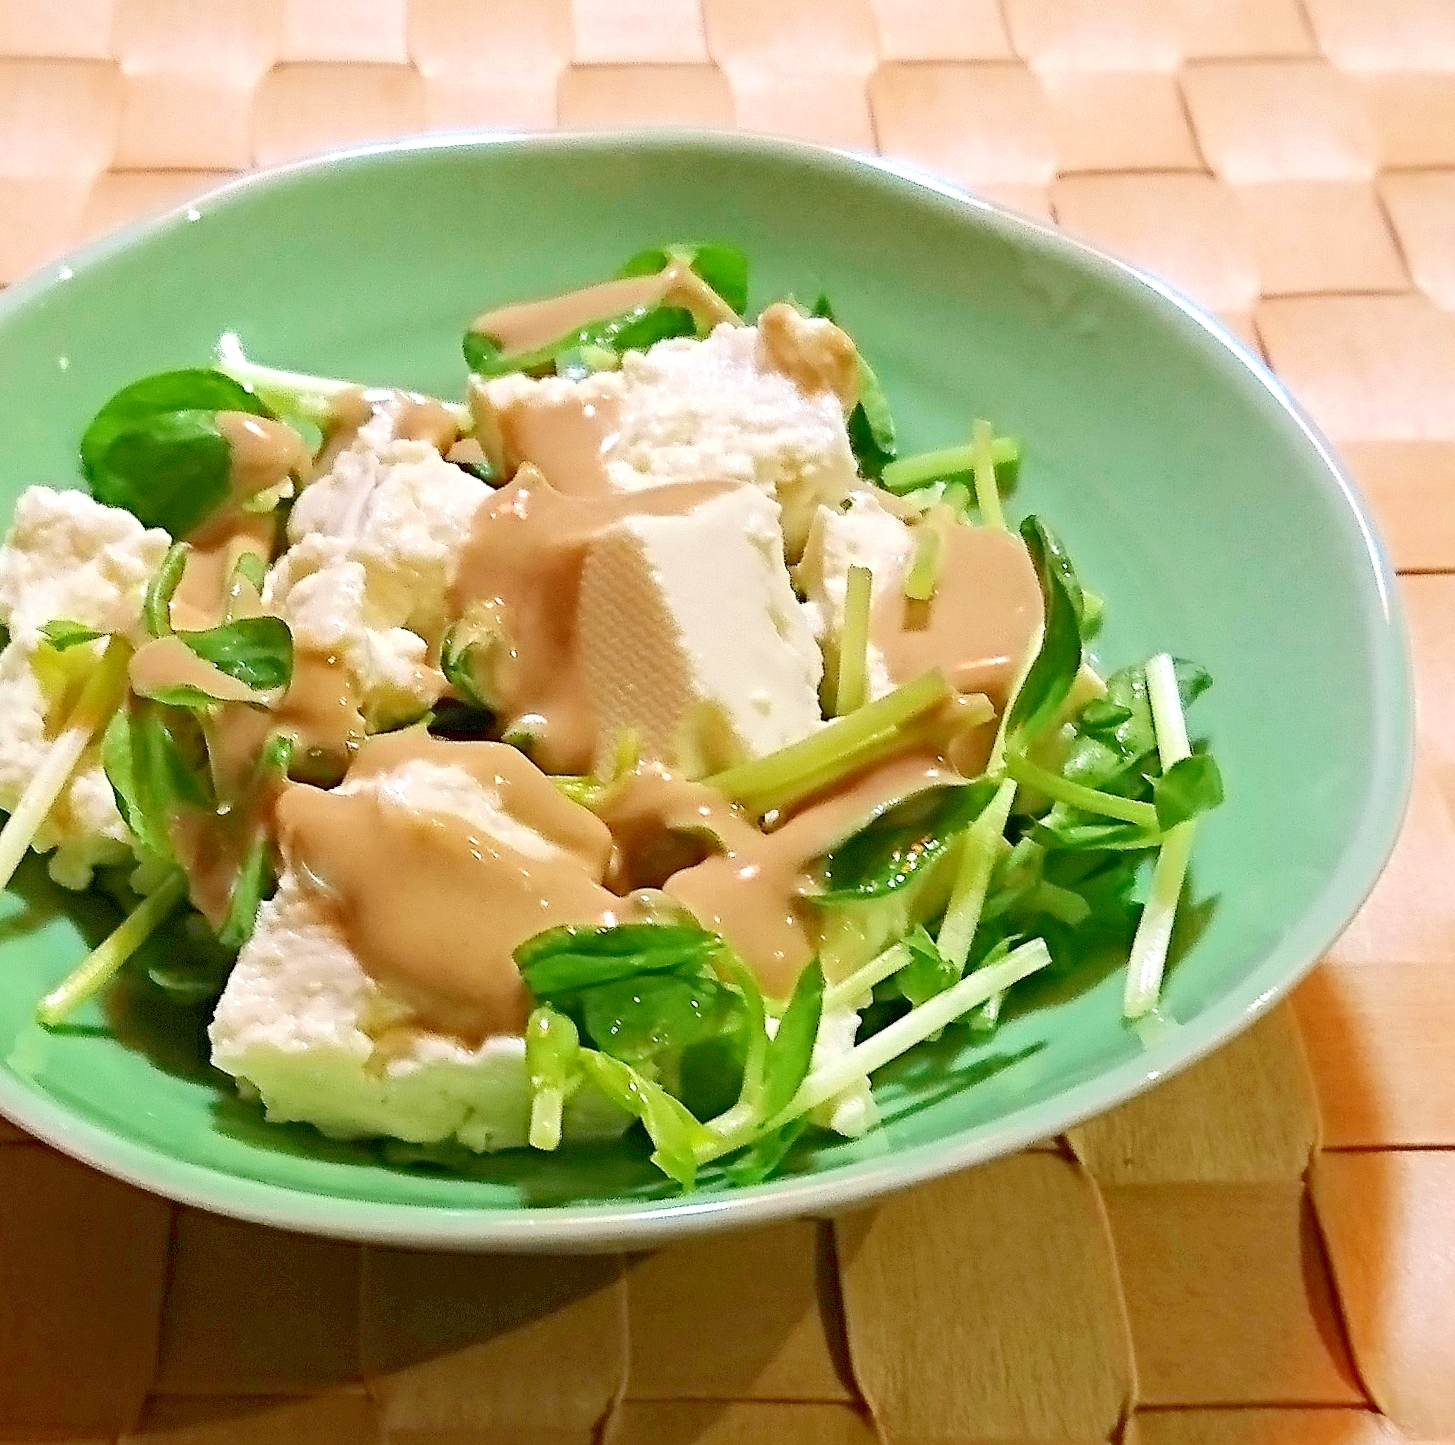 豆苗と豆腐のサラダ